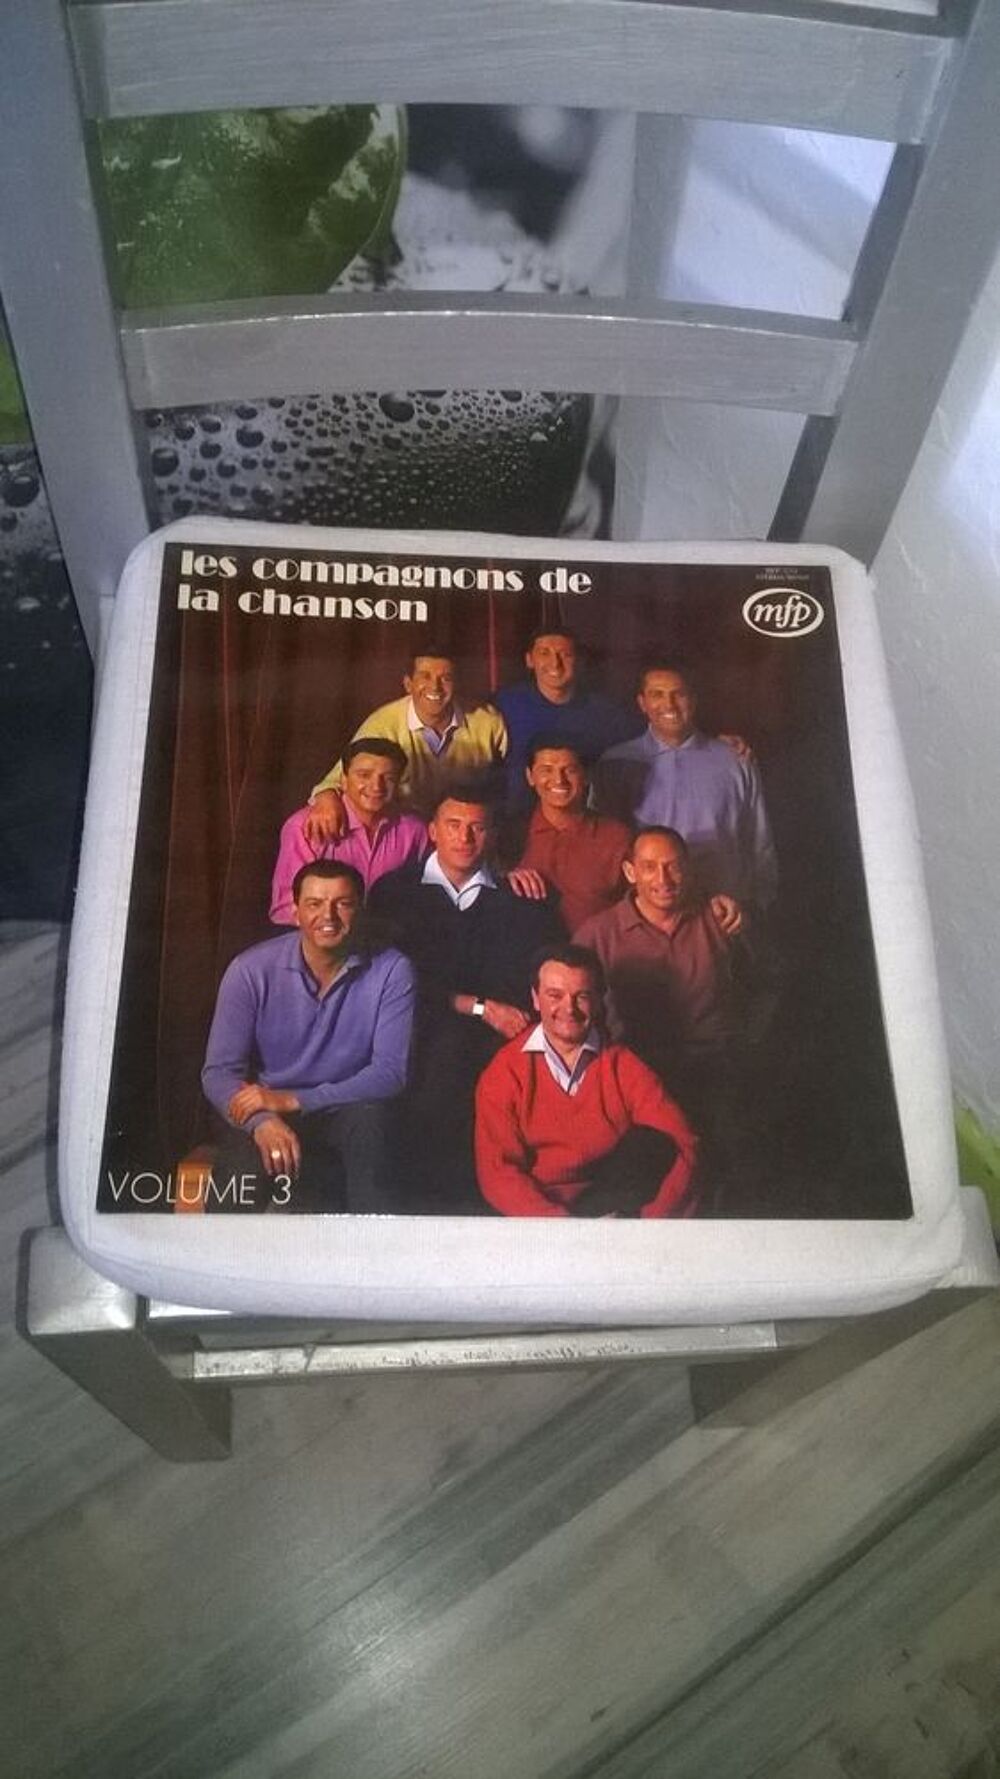 Vinyle Les Compagnons De La Chanson
Volume 3
1973
Excelle CD et vinyles